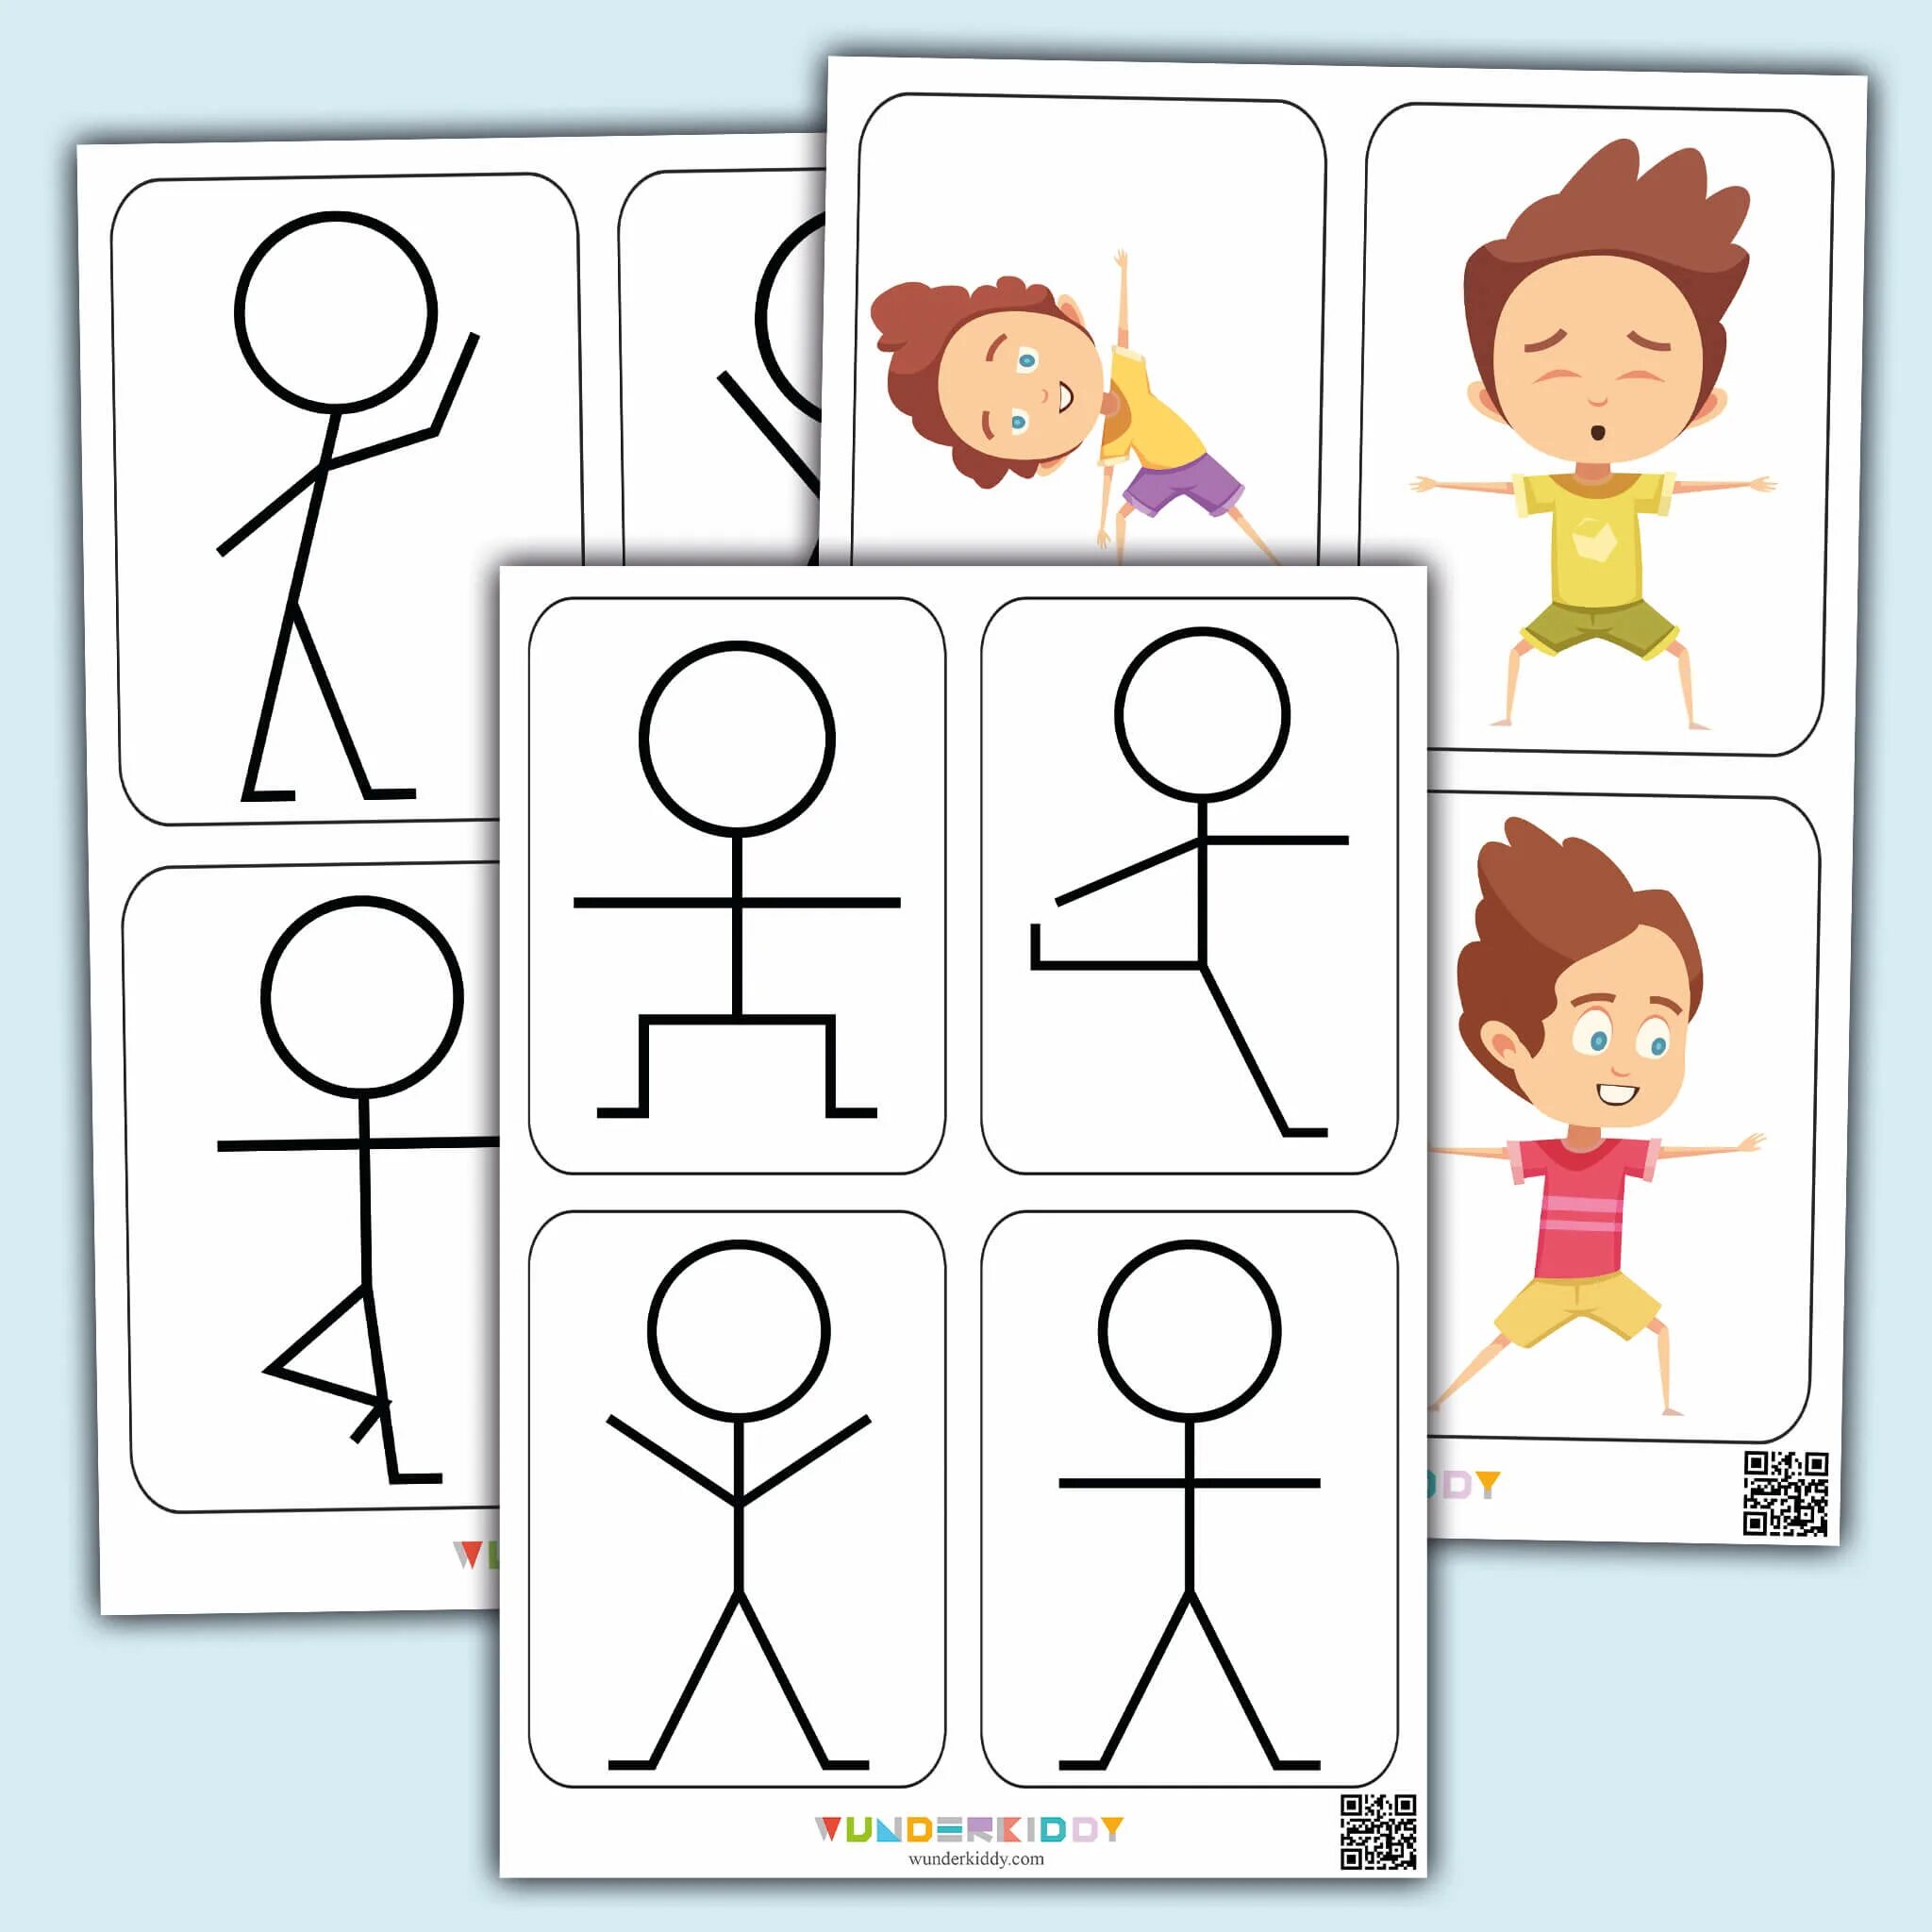 Игра "Веселые человечки". Игровое упражнение «Веселые человечки». Карточки повтори движение для детей. Развивающие человечки развивающие. Wunderkiddy ru